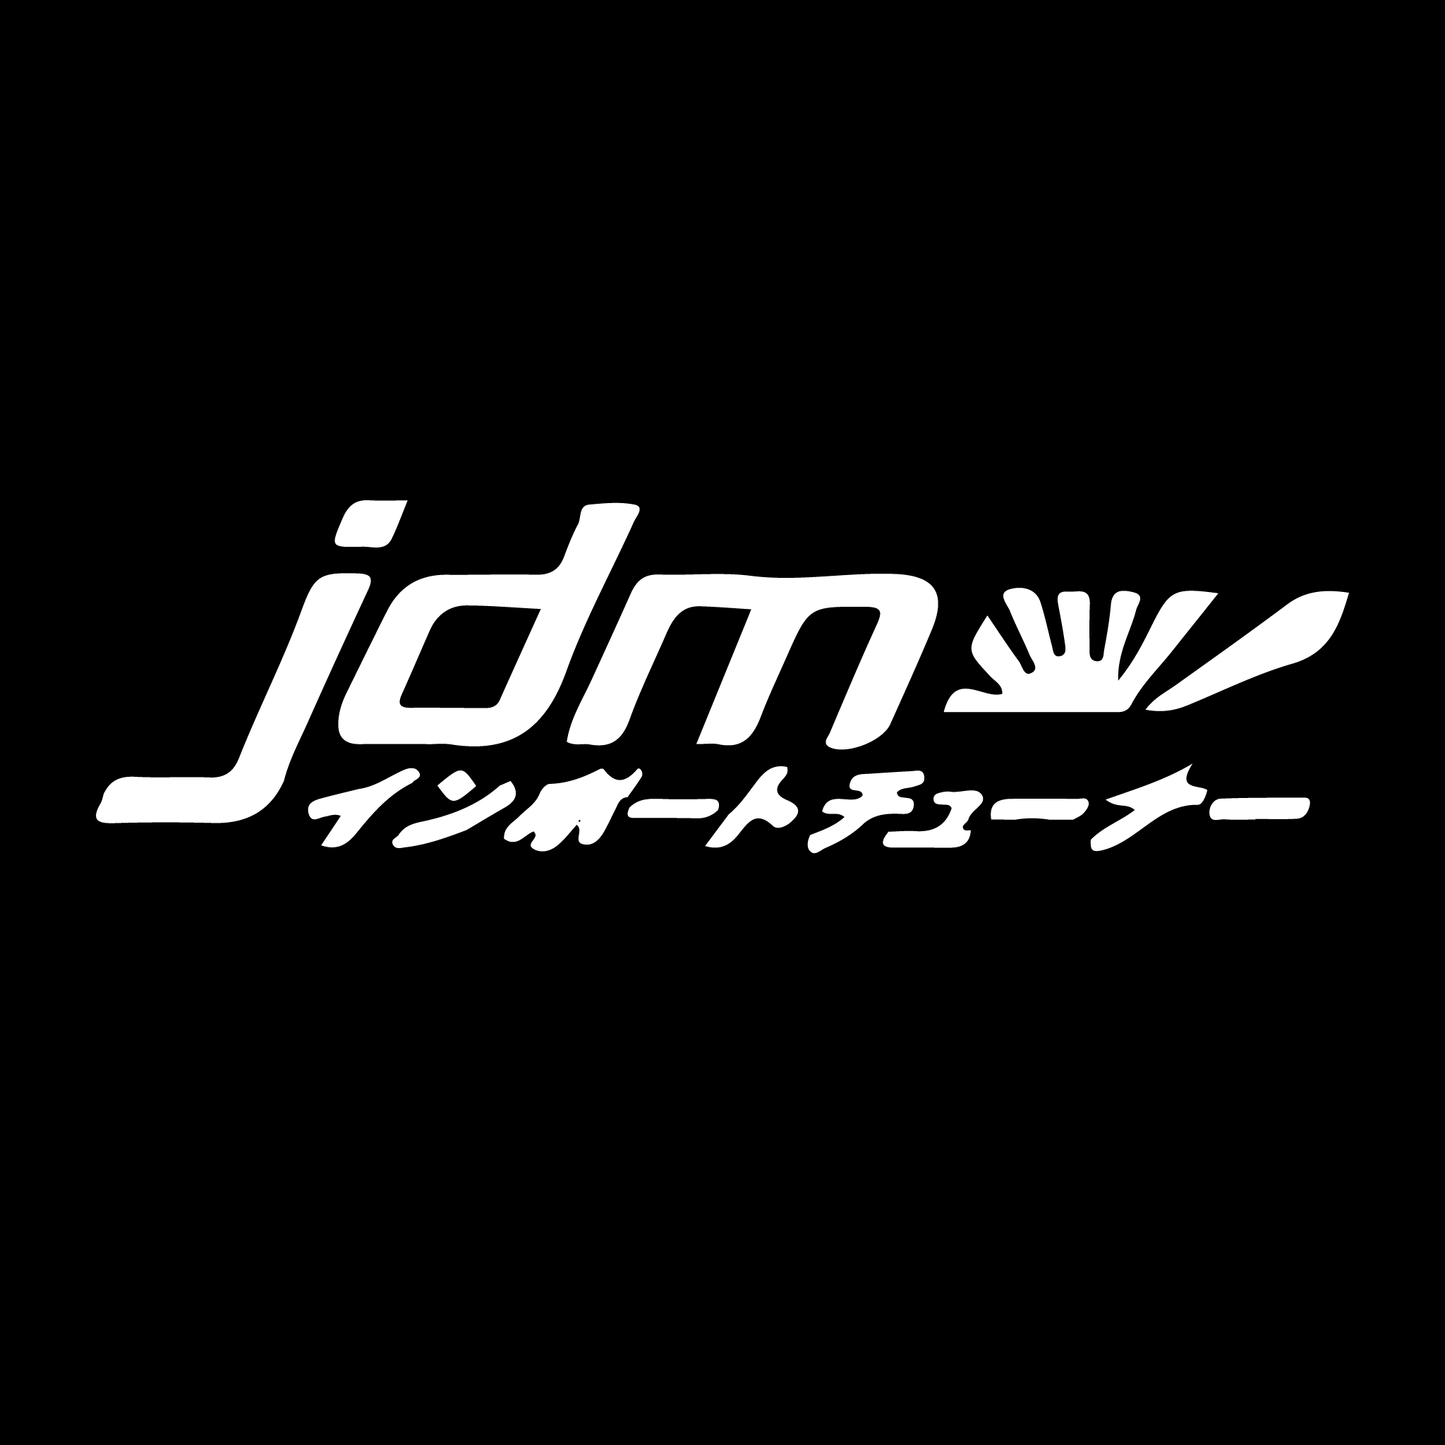 "JDM Schrift" Sticker - Red-Edition Design